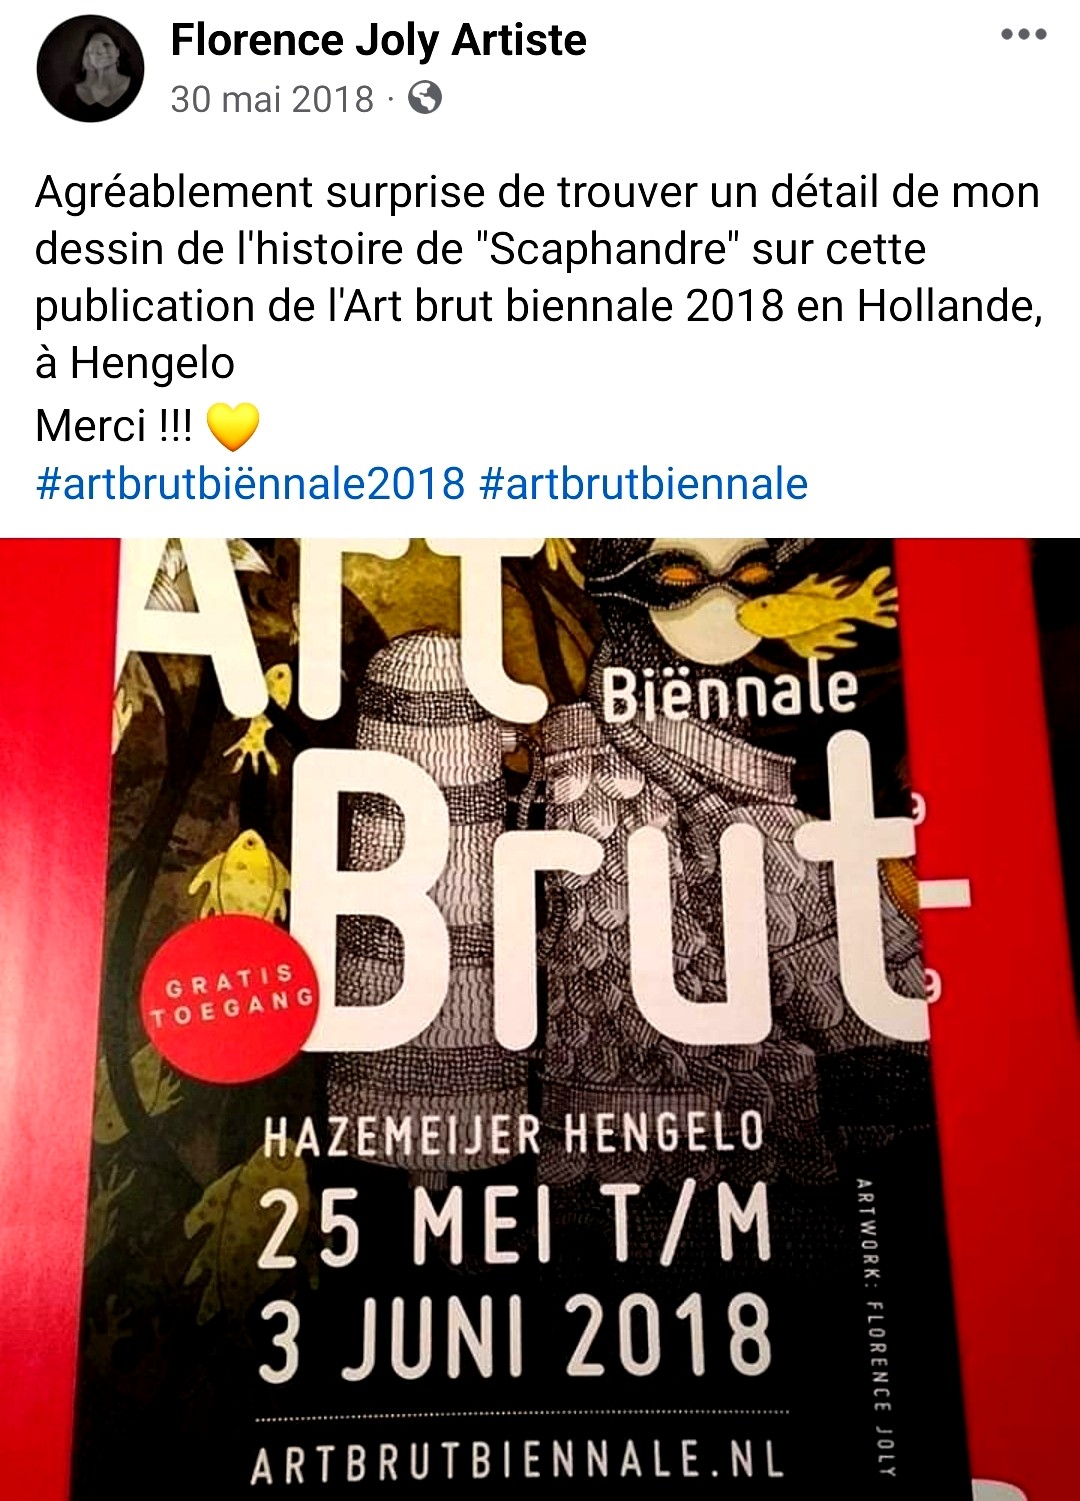 Biennale d'art brut, outsider en Hollande